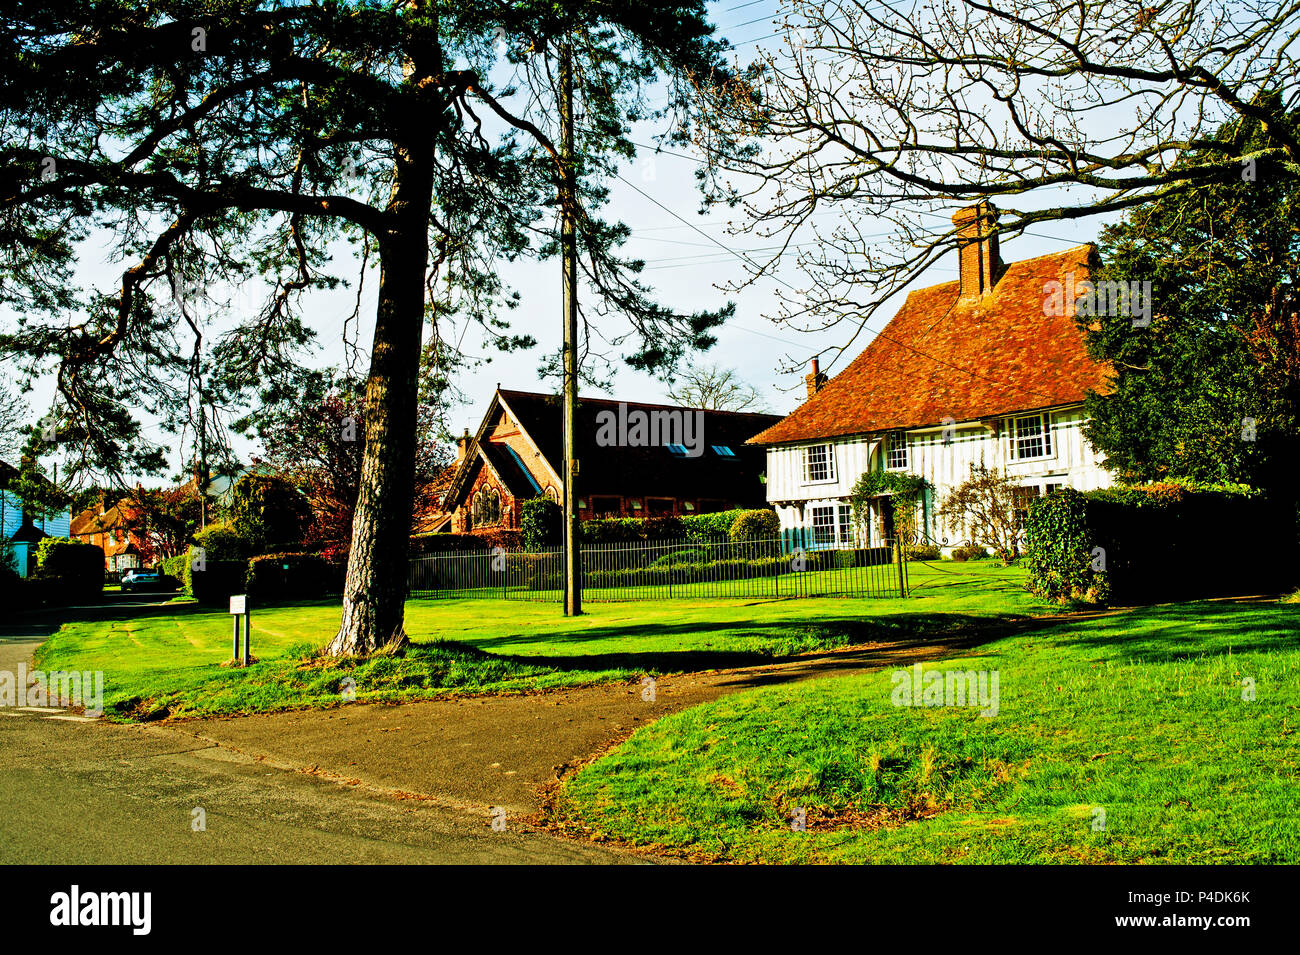 El verde Shadoxhurst, Kent, Inglaterra Foto de stock